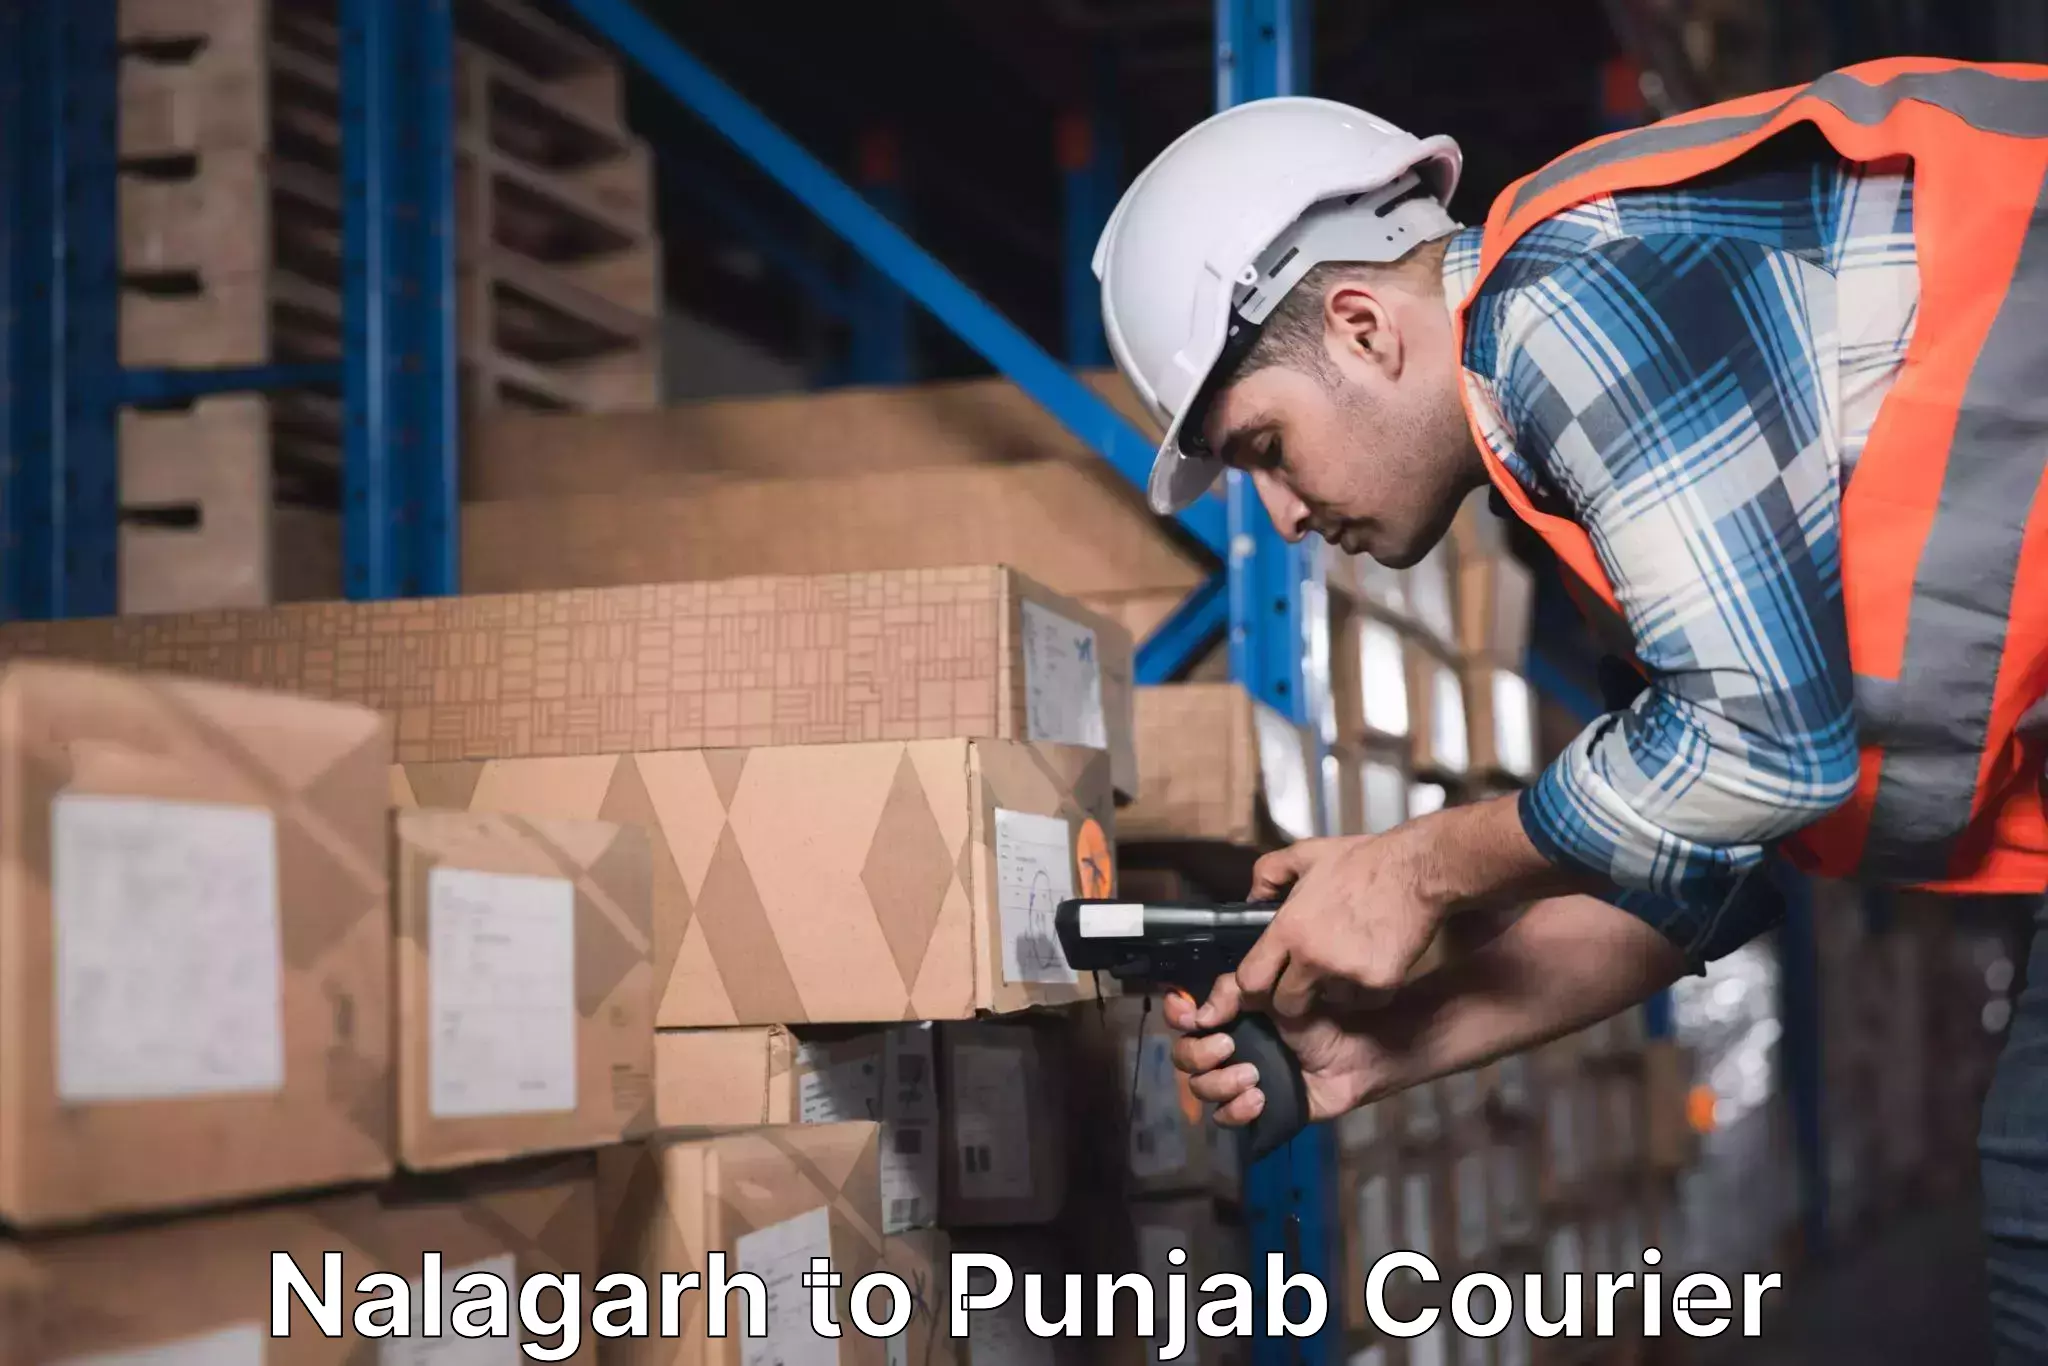 Global shipping networks Nalagarh to Anandpur Sahib